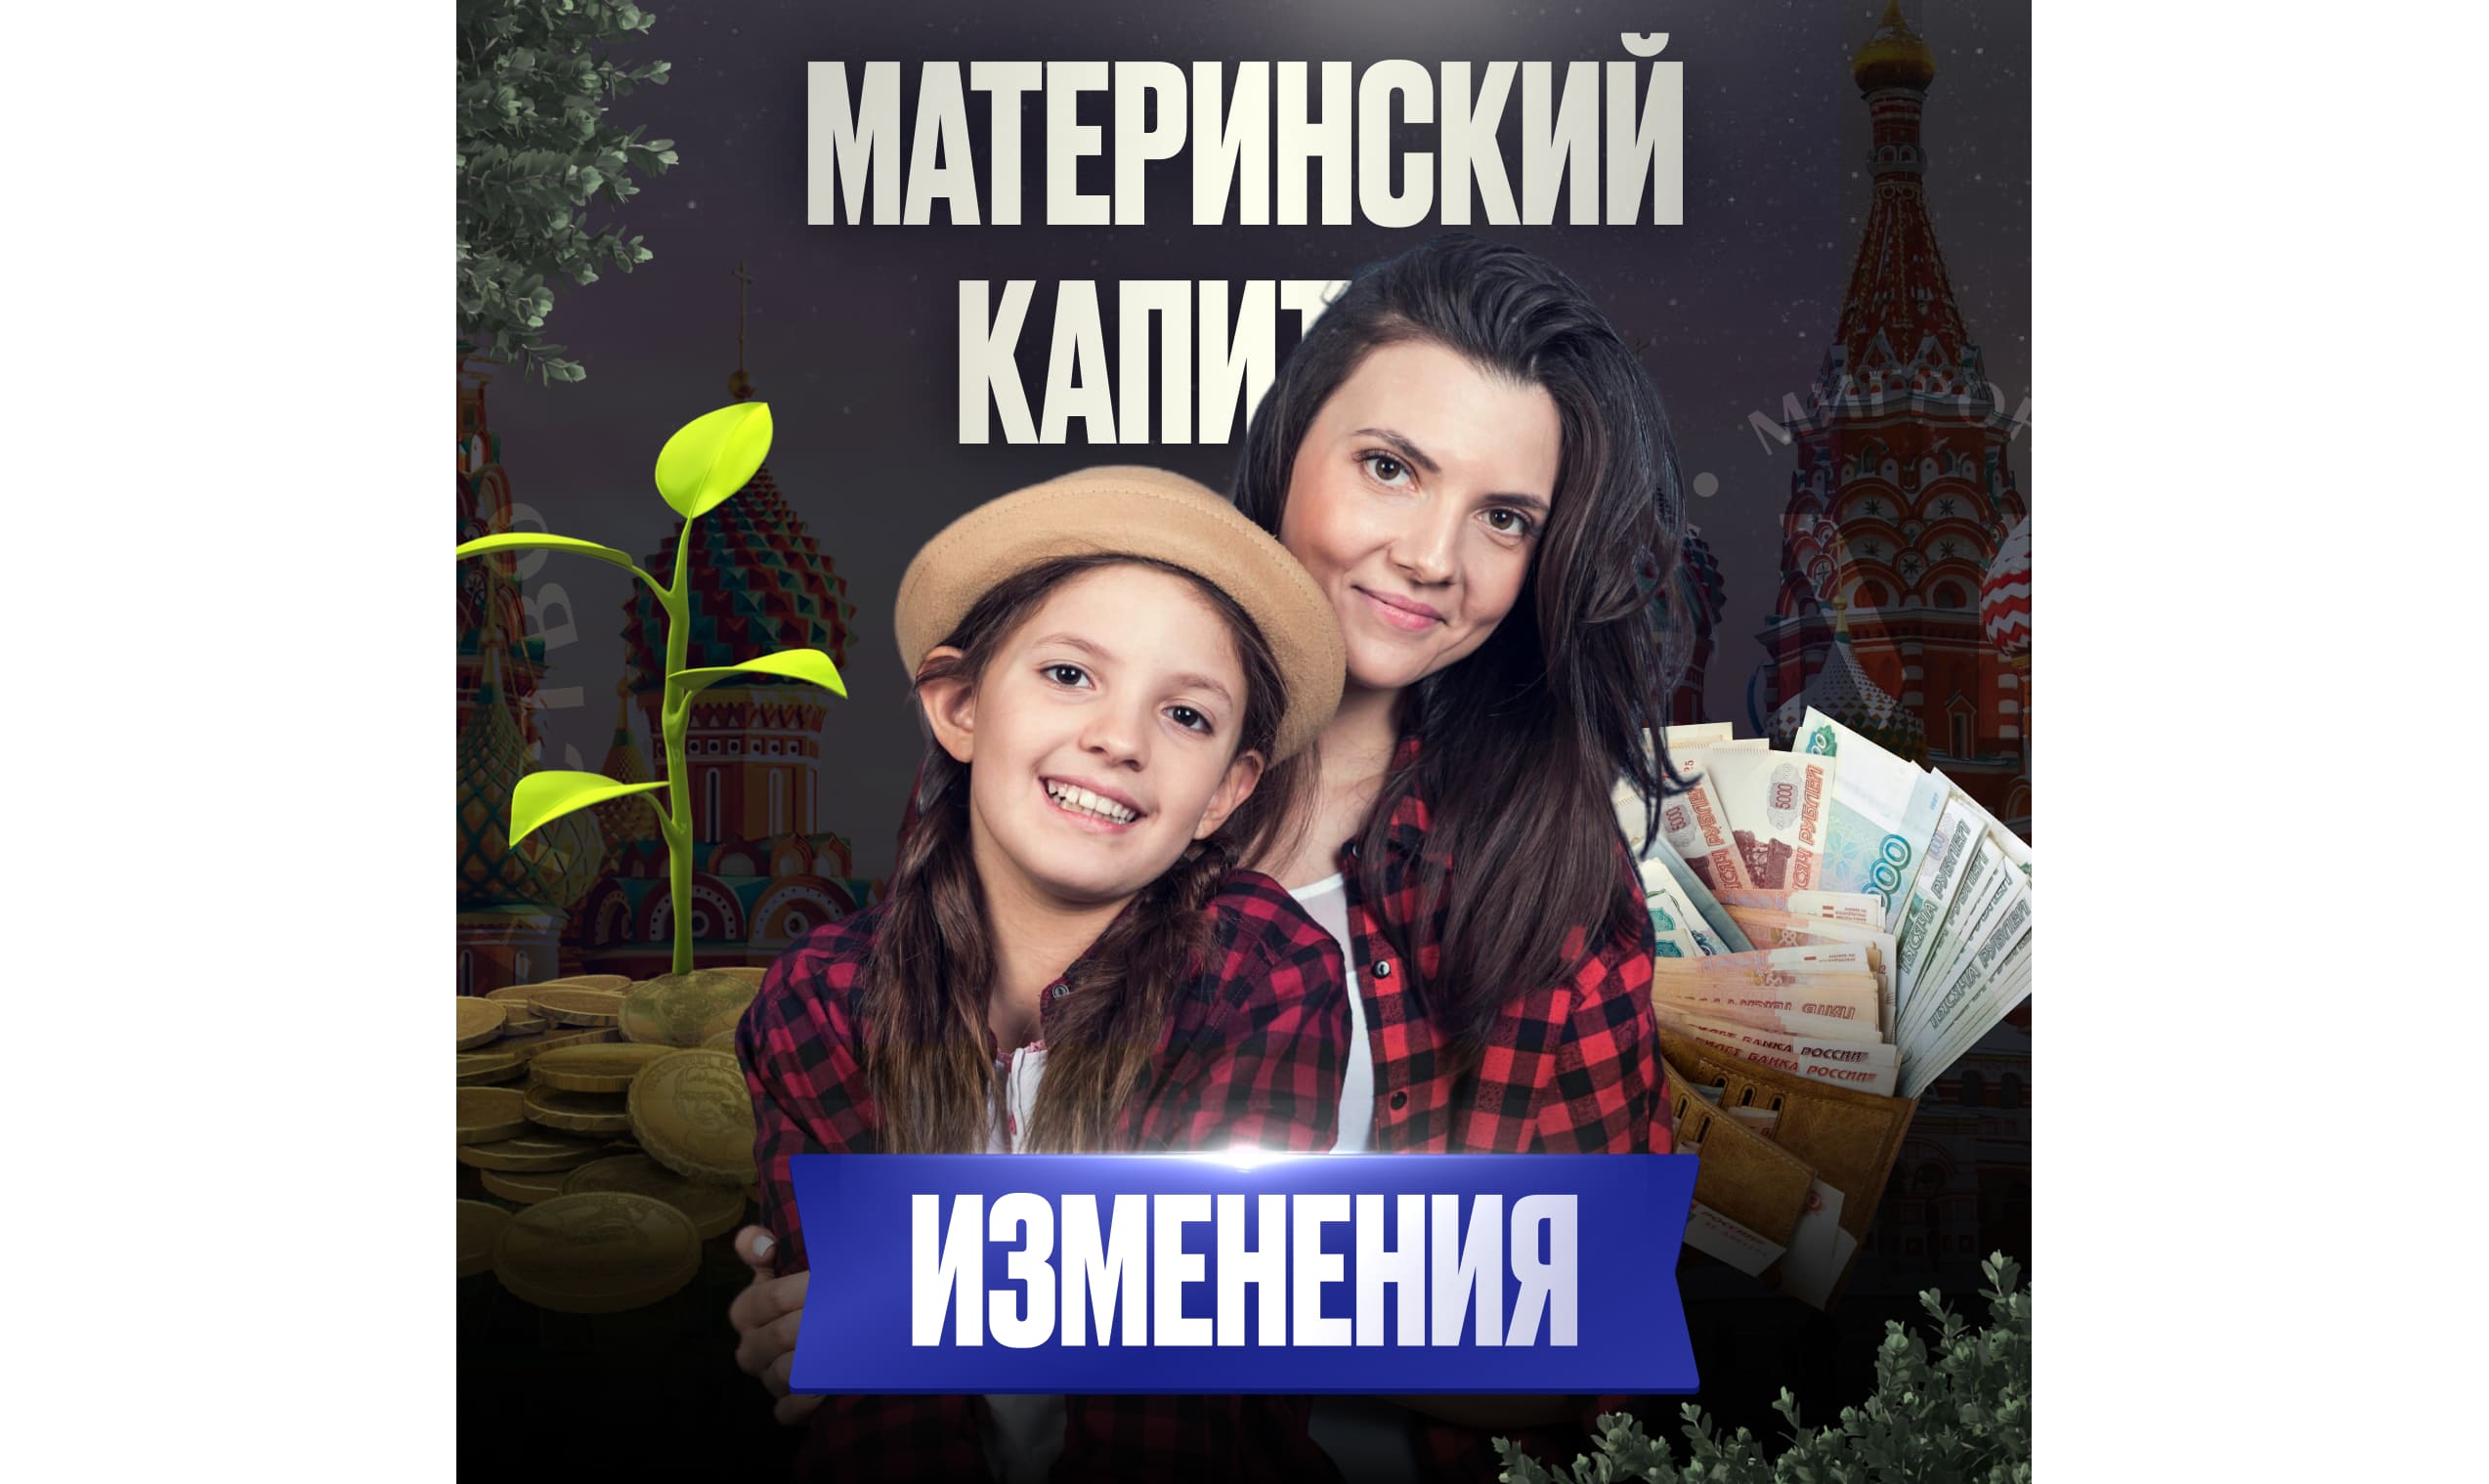 Материнский капитал только для граждан РФ